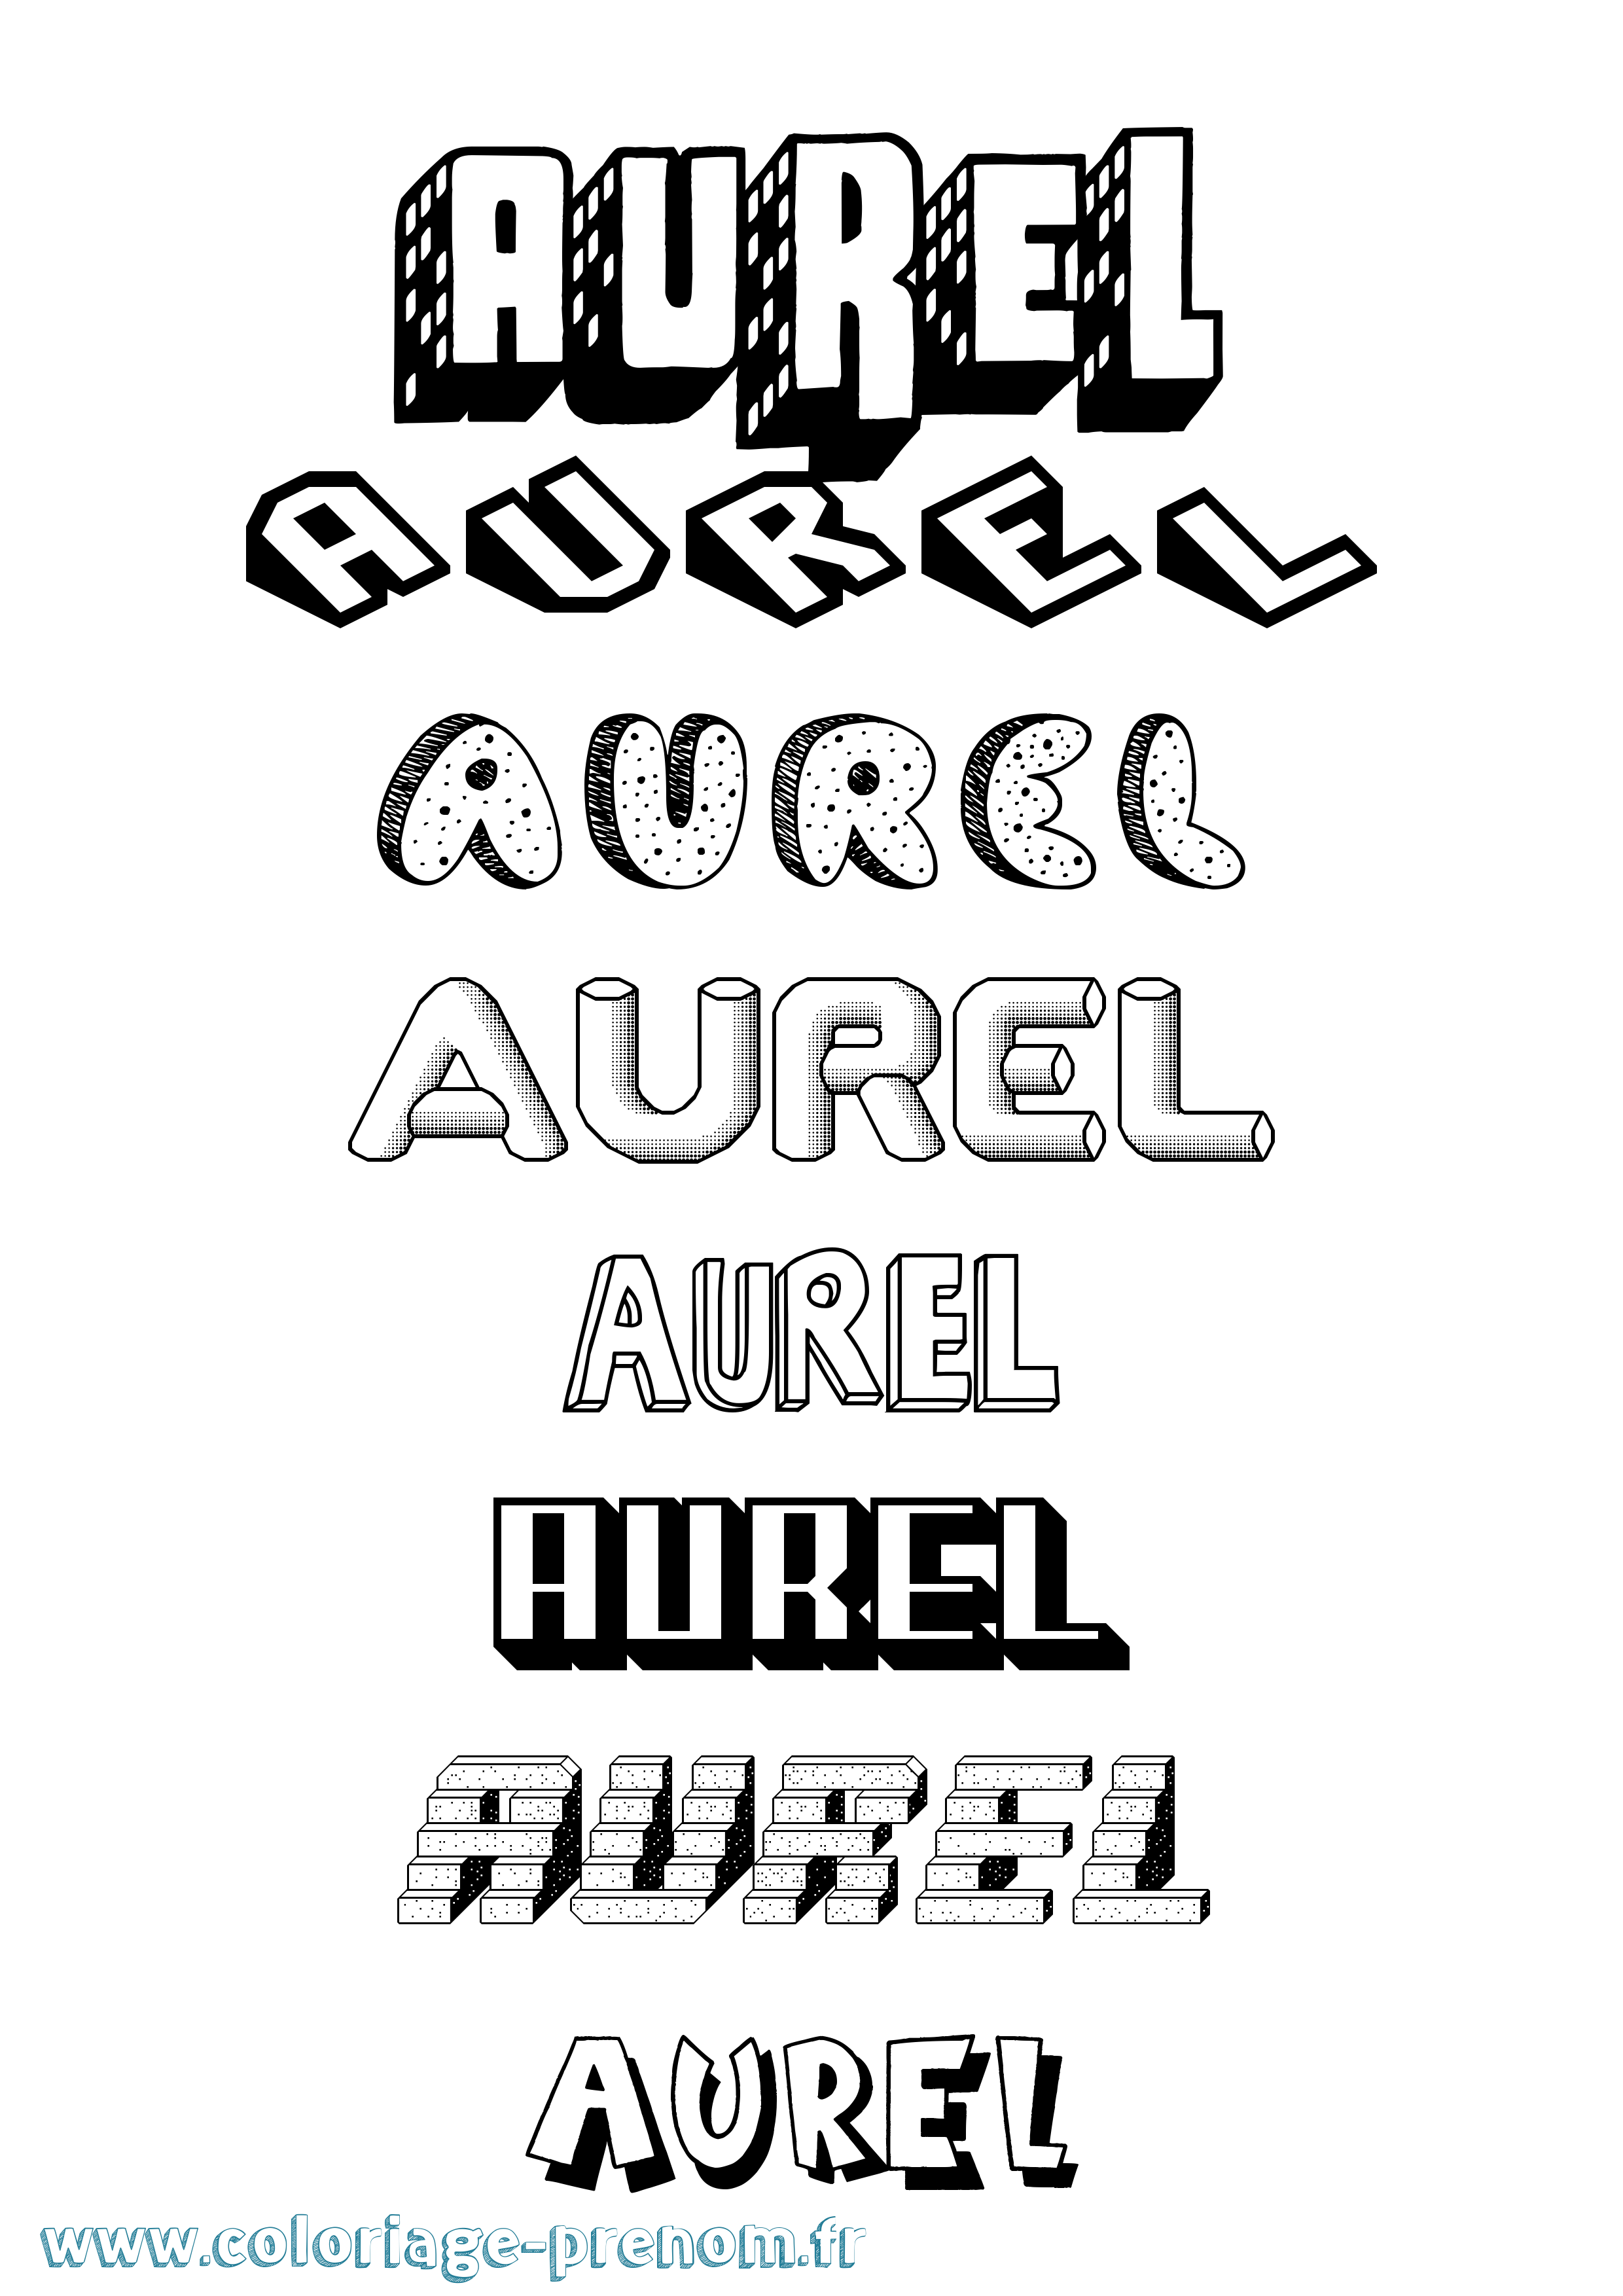 Coloriage prénom Aurel Effet 3D